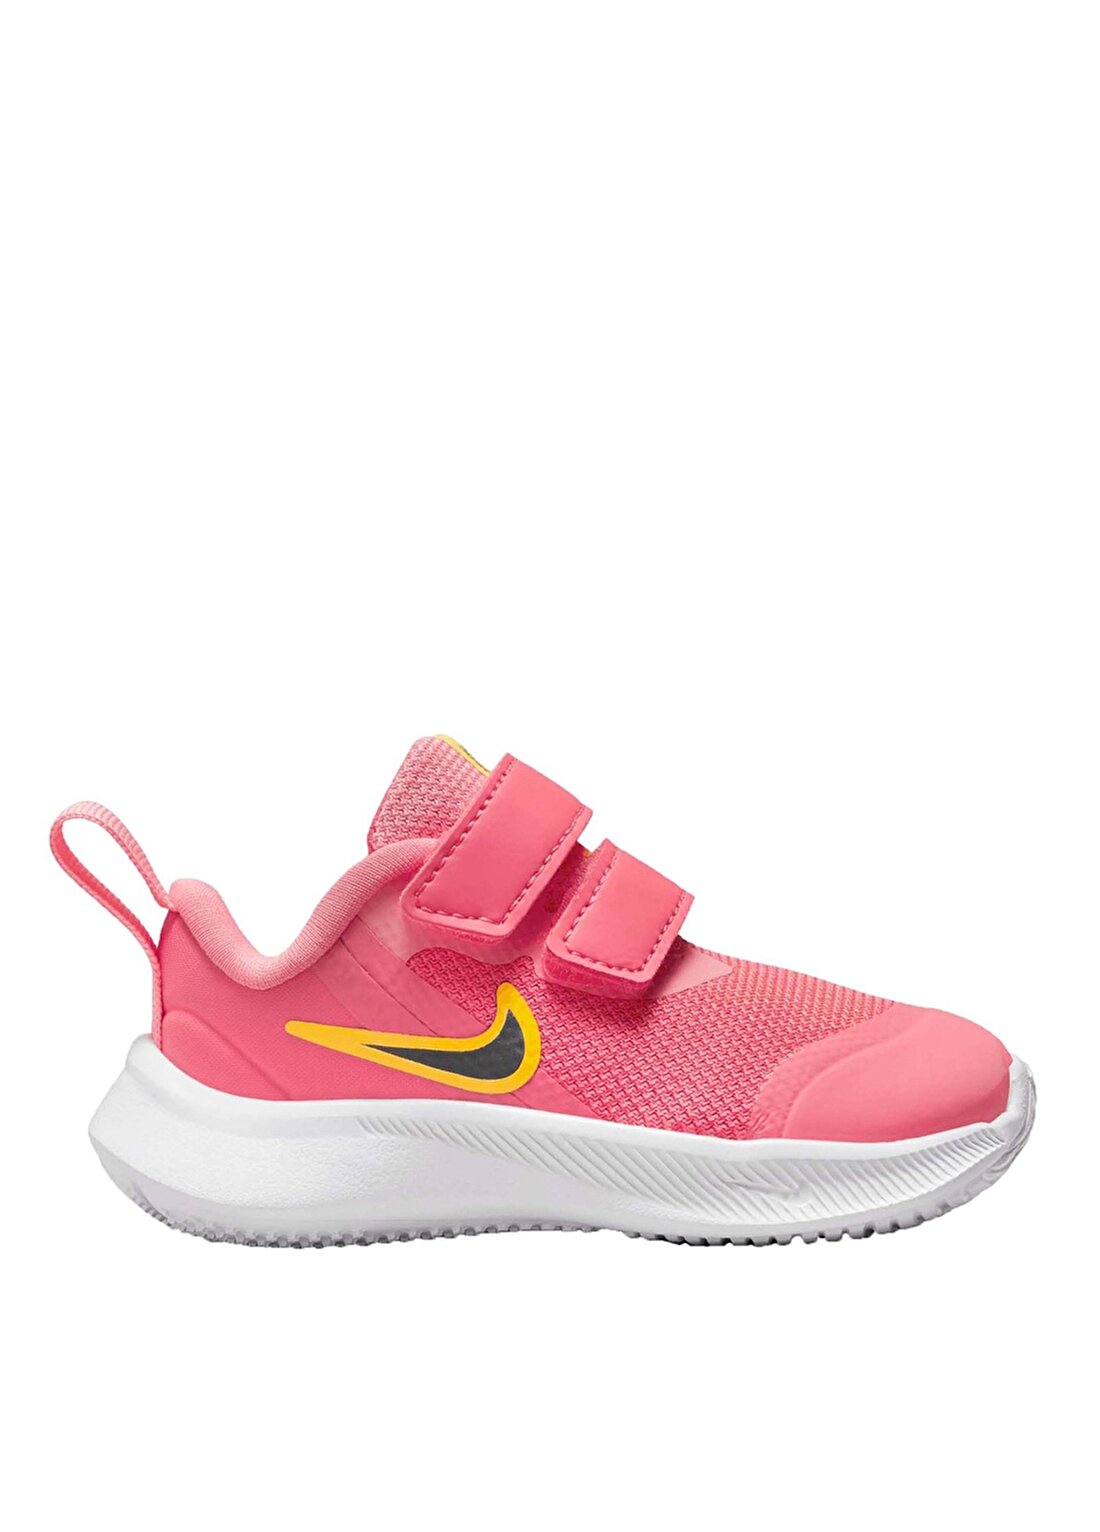 Nike Bebek Pembe Yürüyüş Ayakkabısı DA2778-800 NIKE STAR RUNNER 3 (TDV)